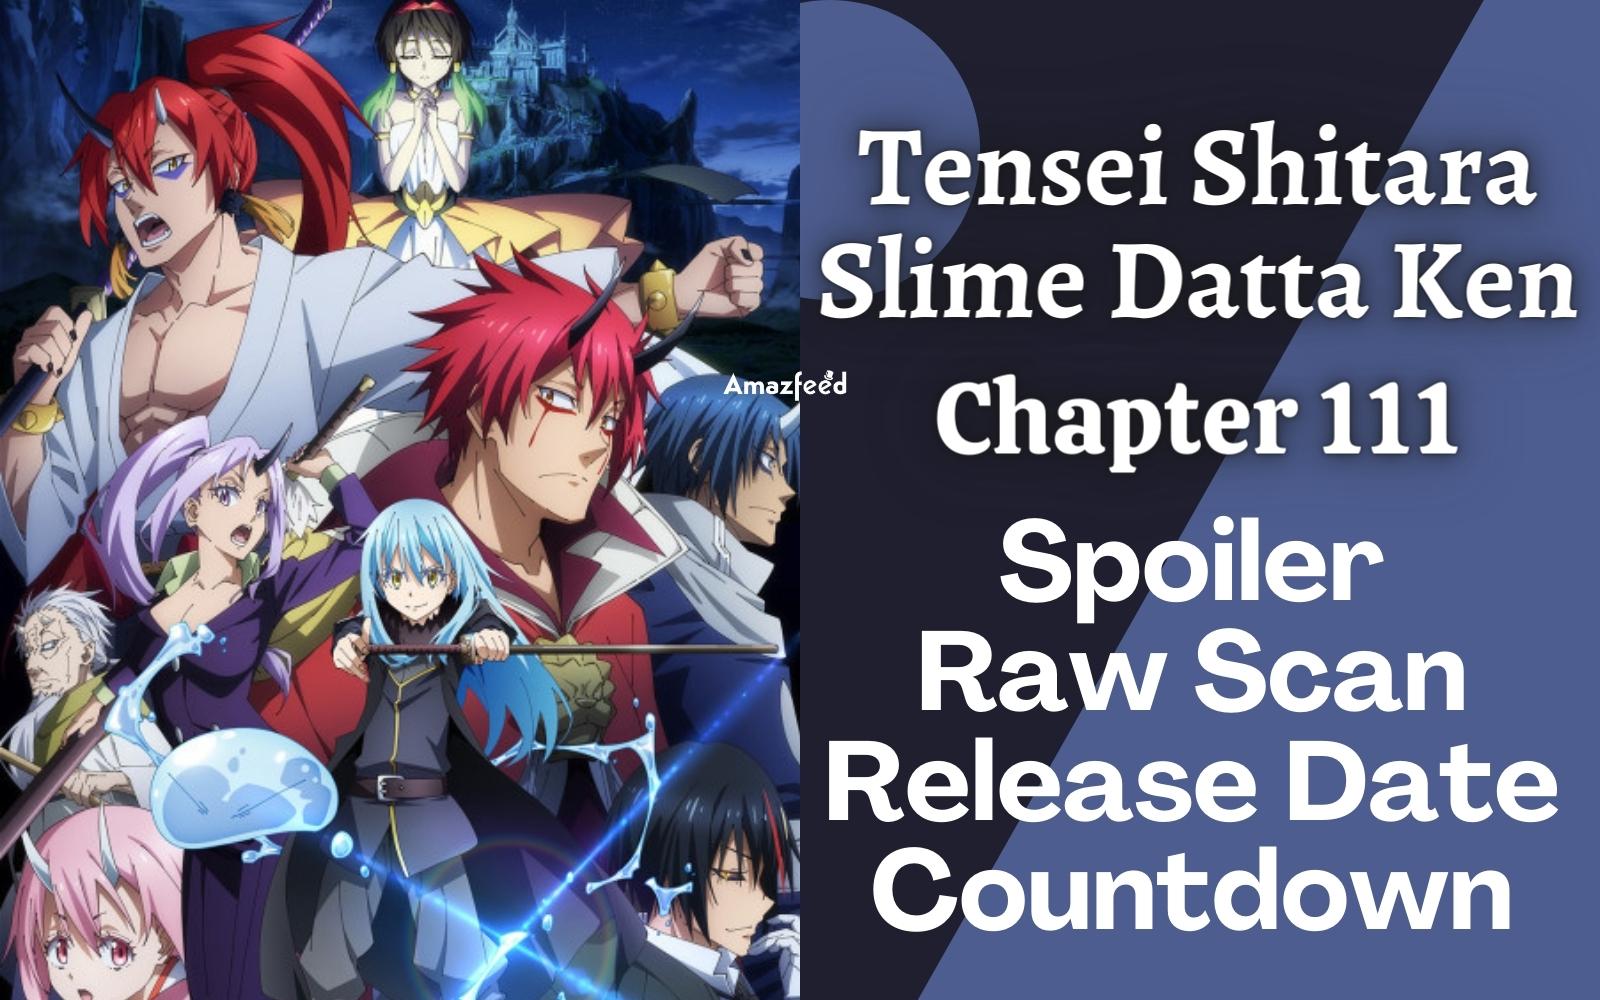 Tensei Shitara Slime Datta Ken Chapter 111: Tournament - Finals Part 6 